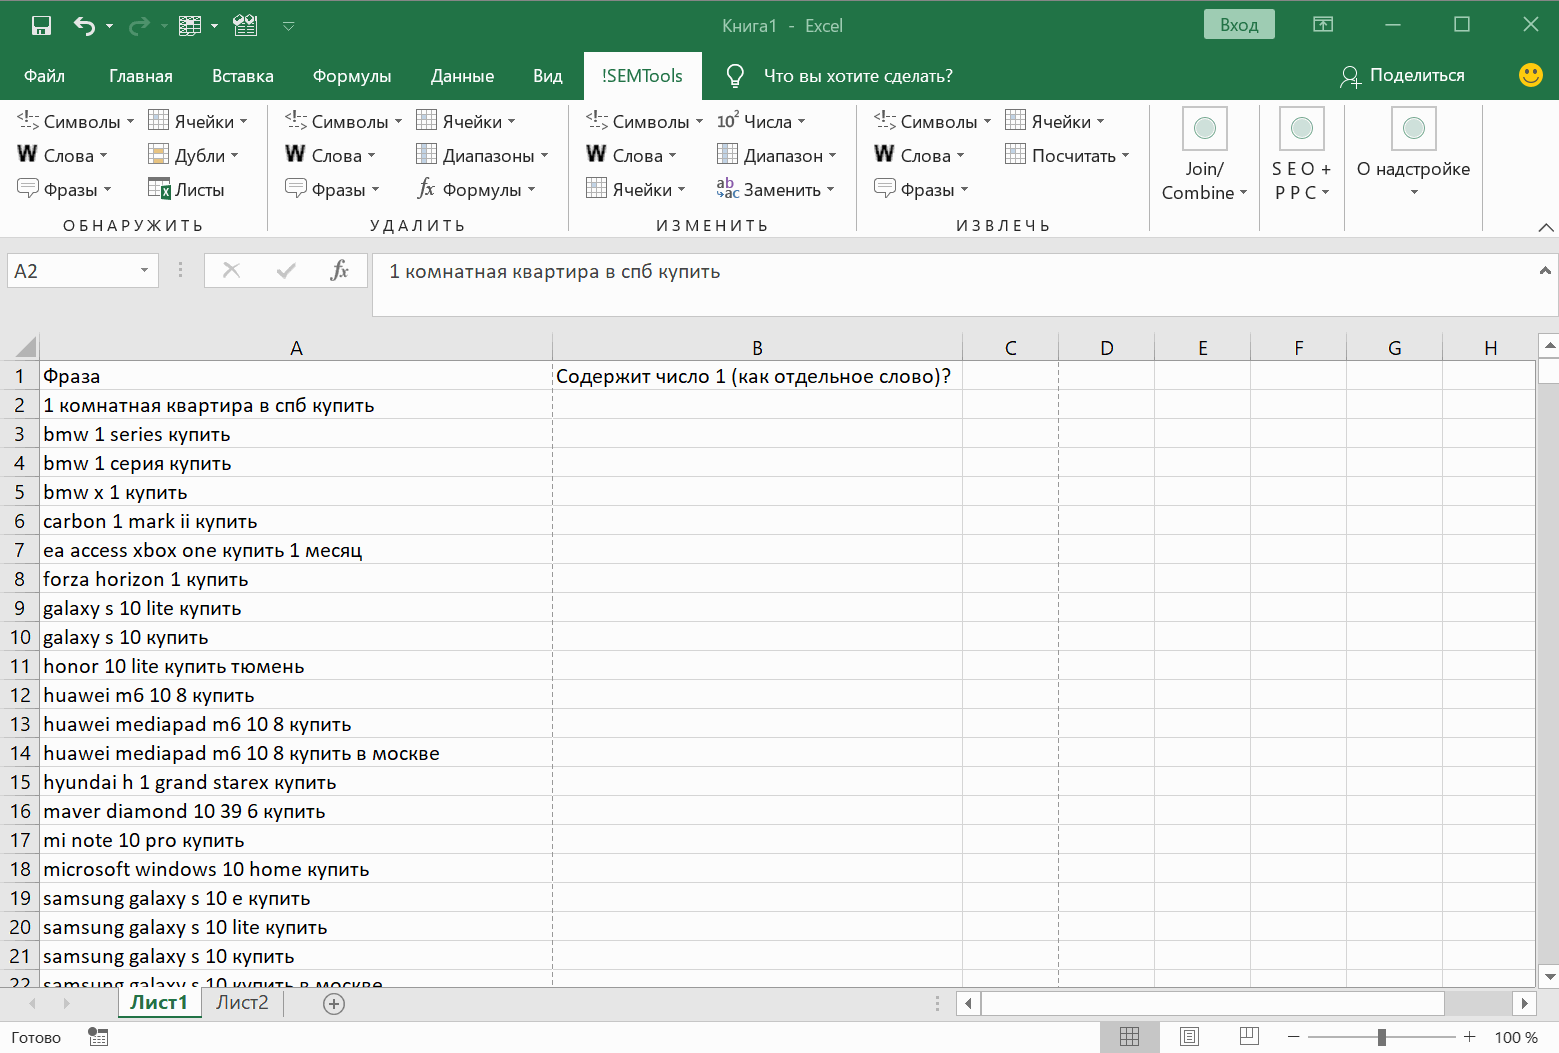 Поиск символа в строке таблицы Excel